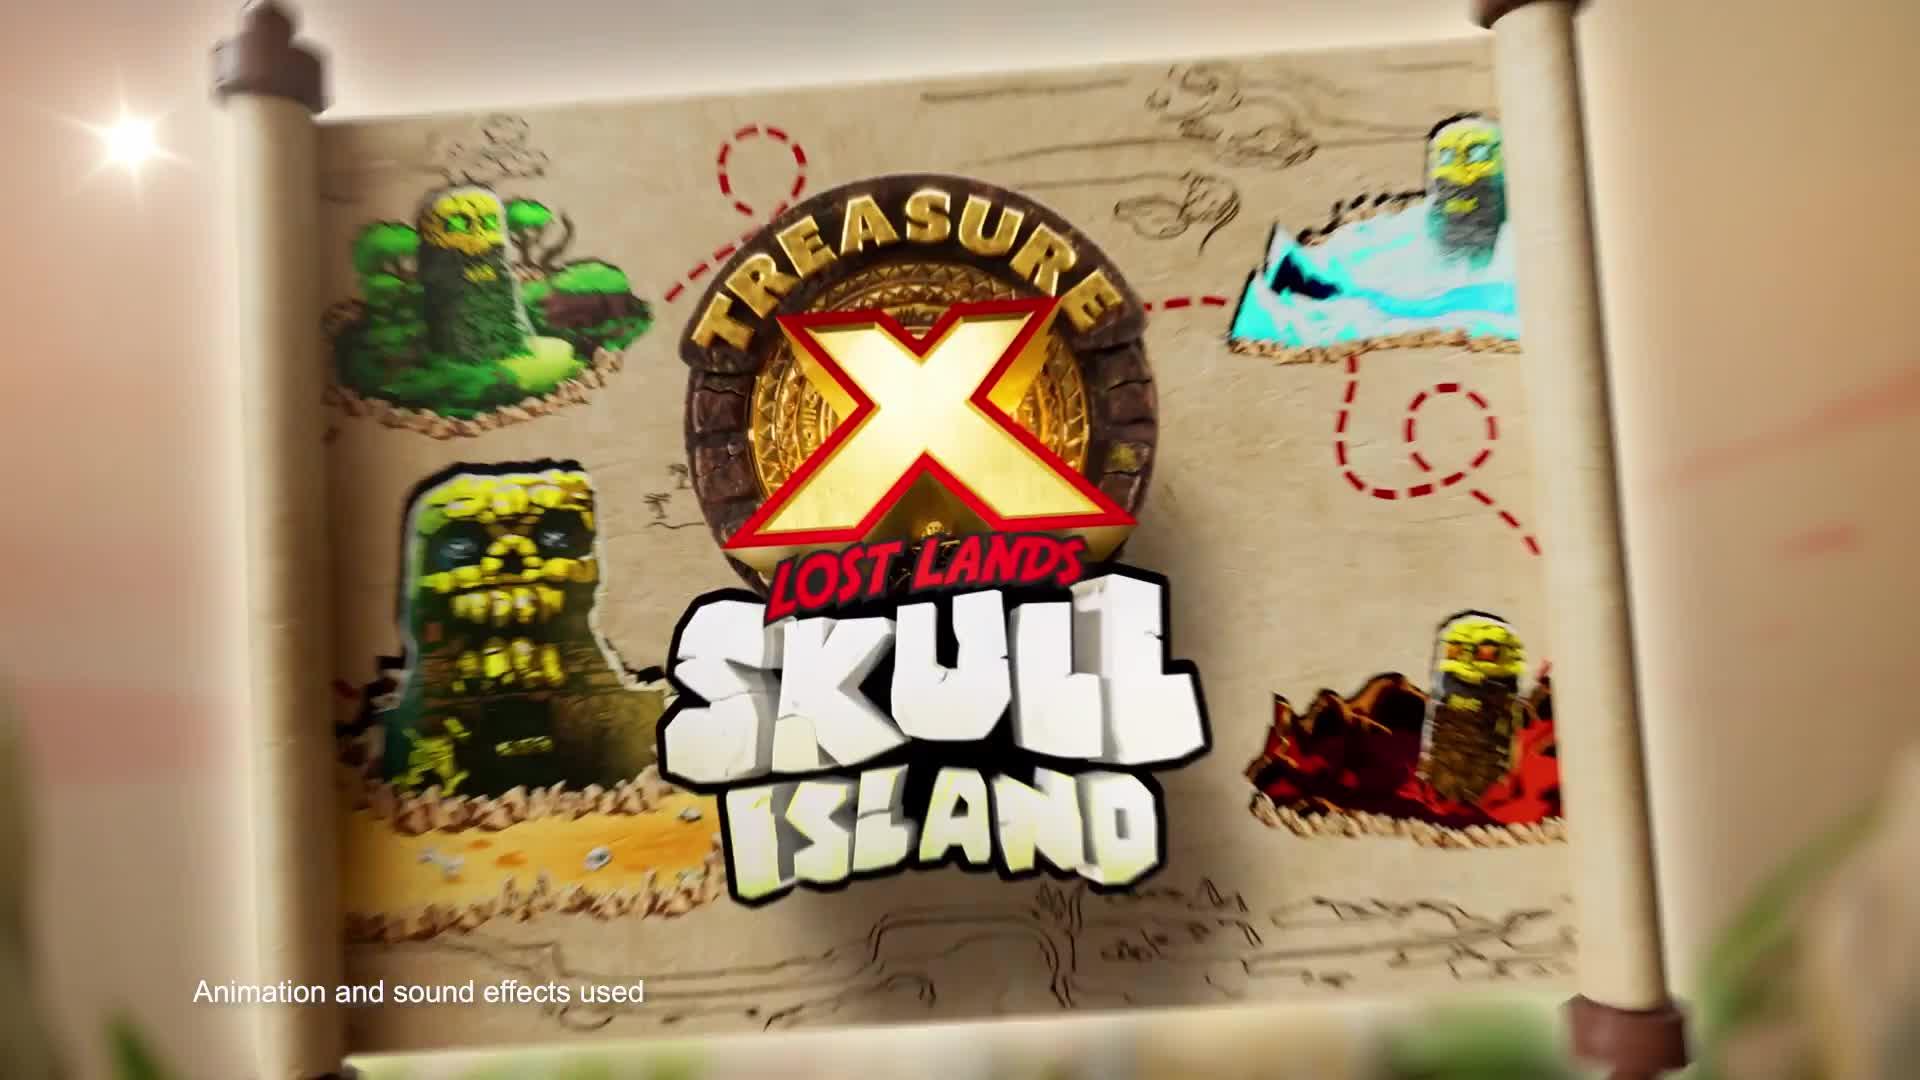 Treasure X Lost Lands Skull Island Temple – Toys R Us Australia